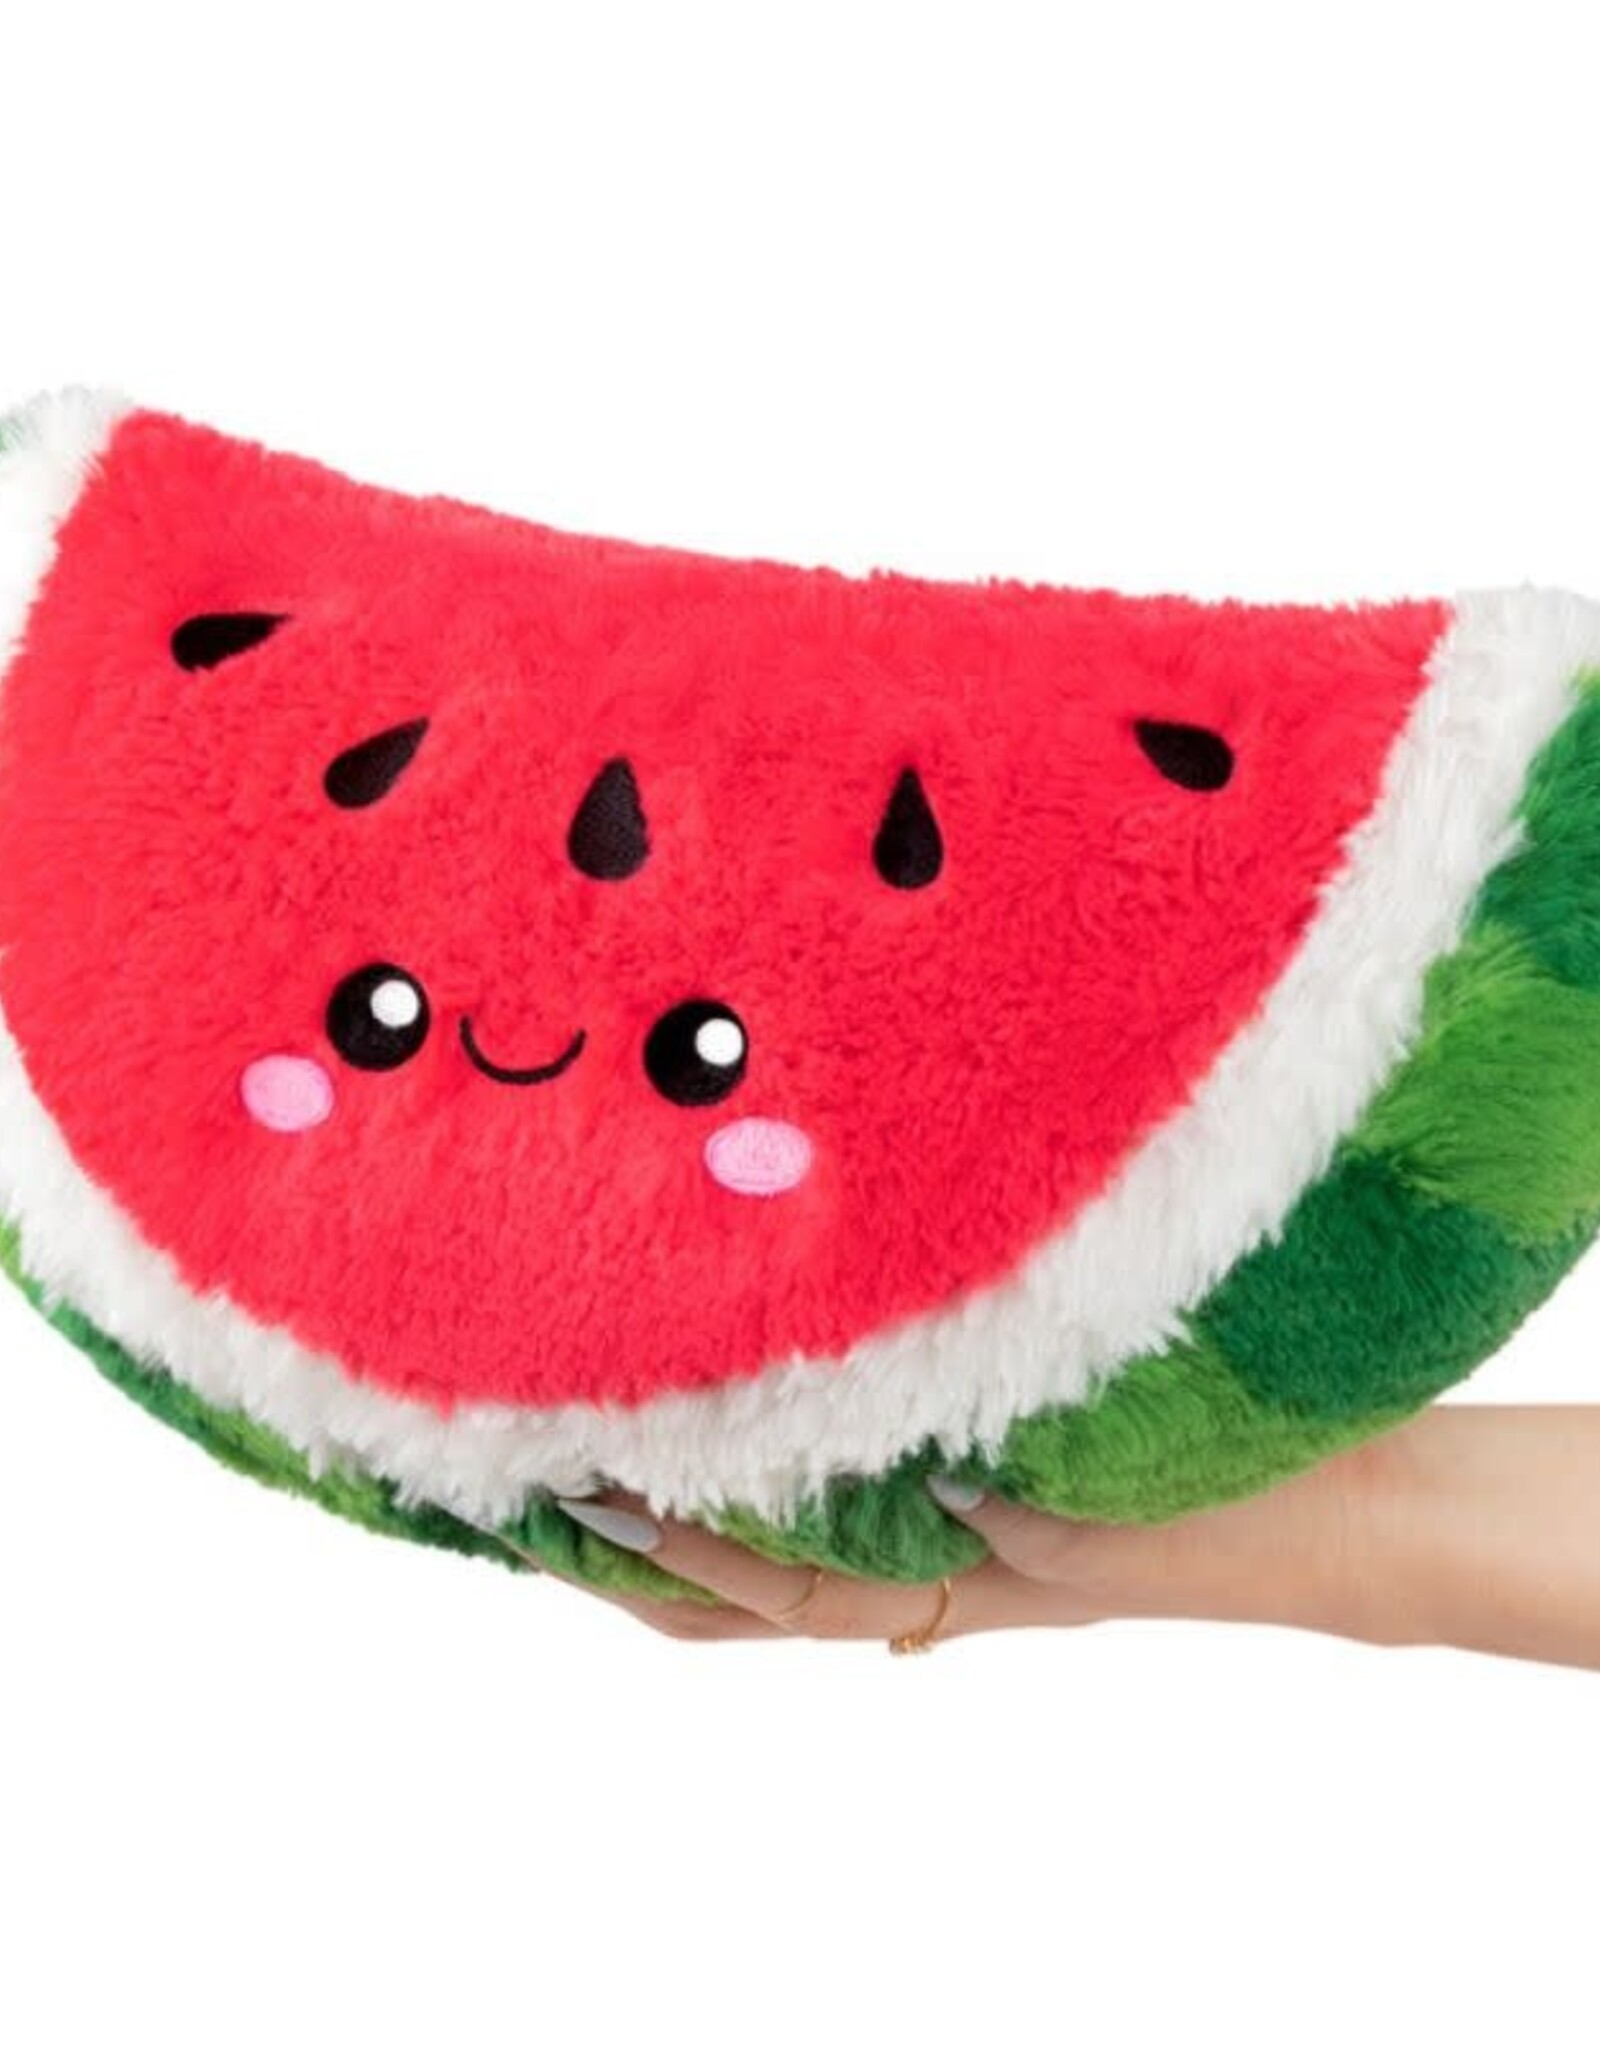 Squishable Mini Squishable: Watermelon